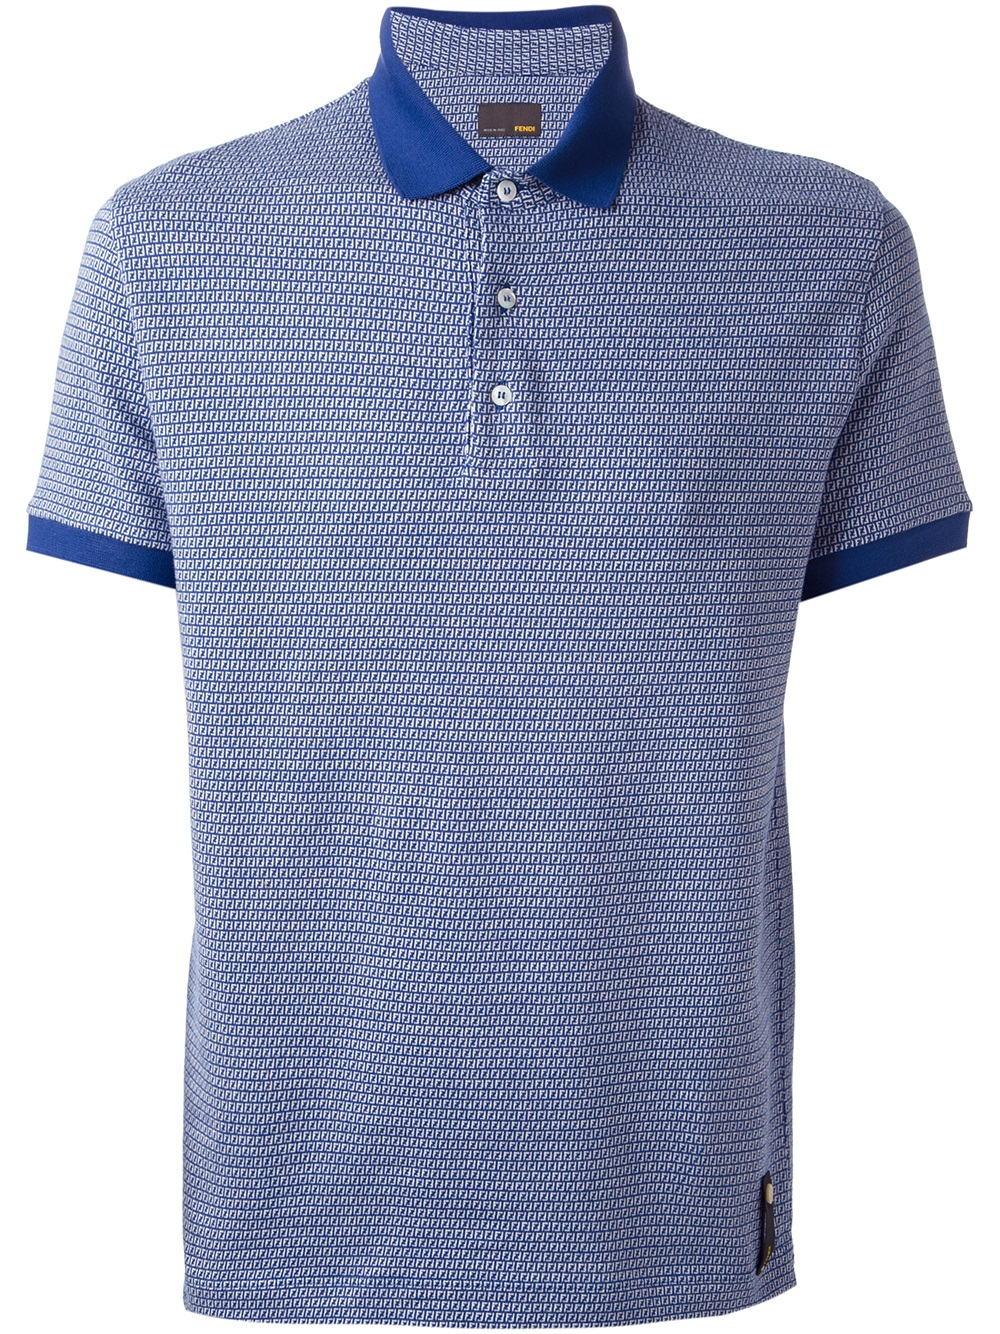 Lyst - Fendi Monogram Print Polo Shirt in Blue for Men